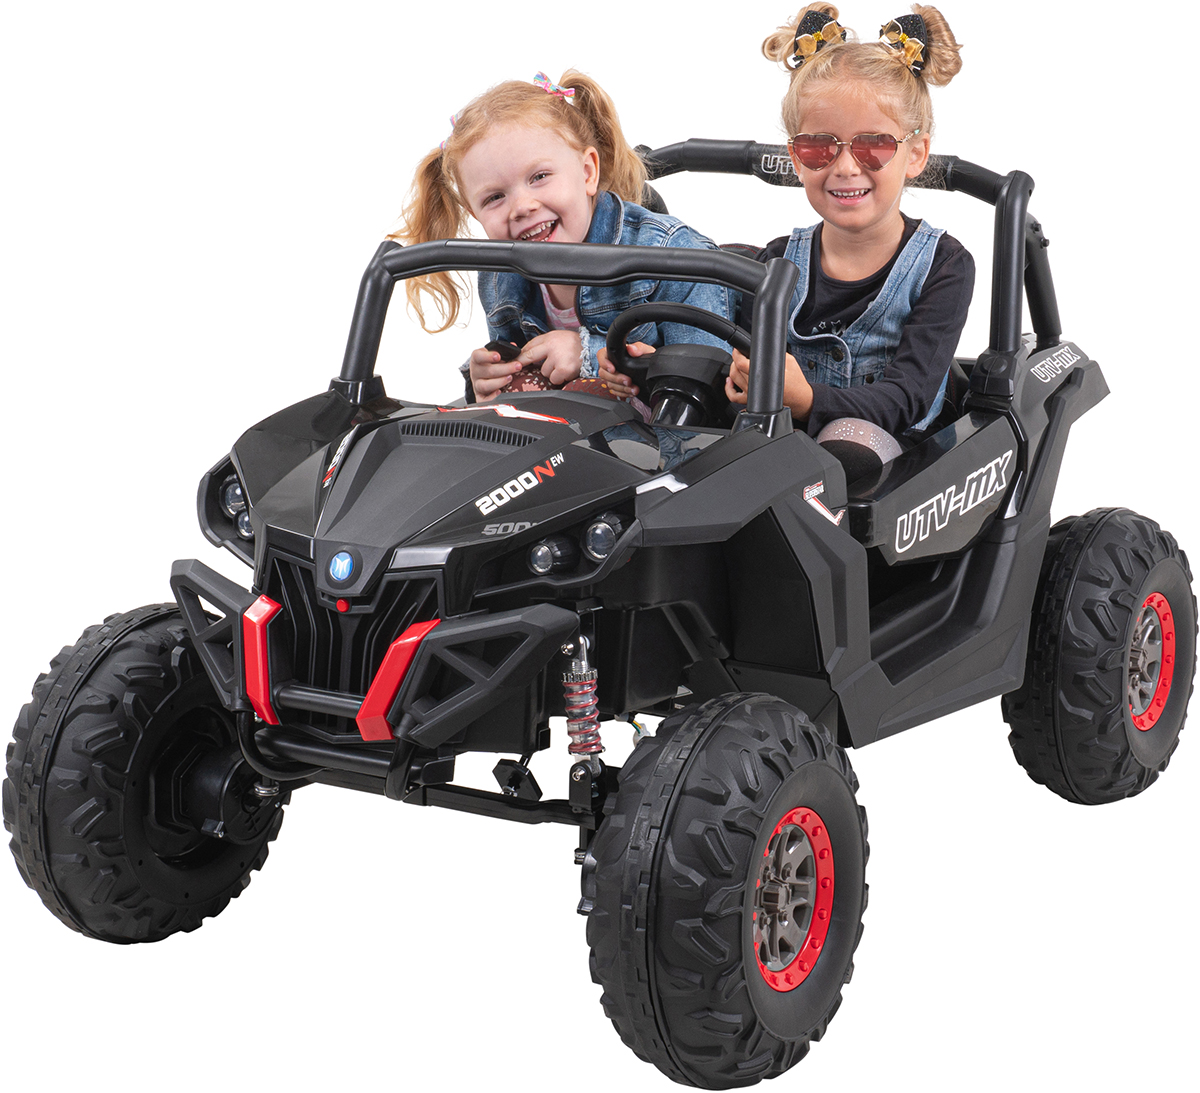 UTV-MX batteriebetriebener Buggy für Kinder, Rot + 4x4-Antrieb + Fern,  480,90 €